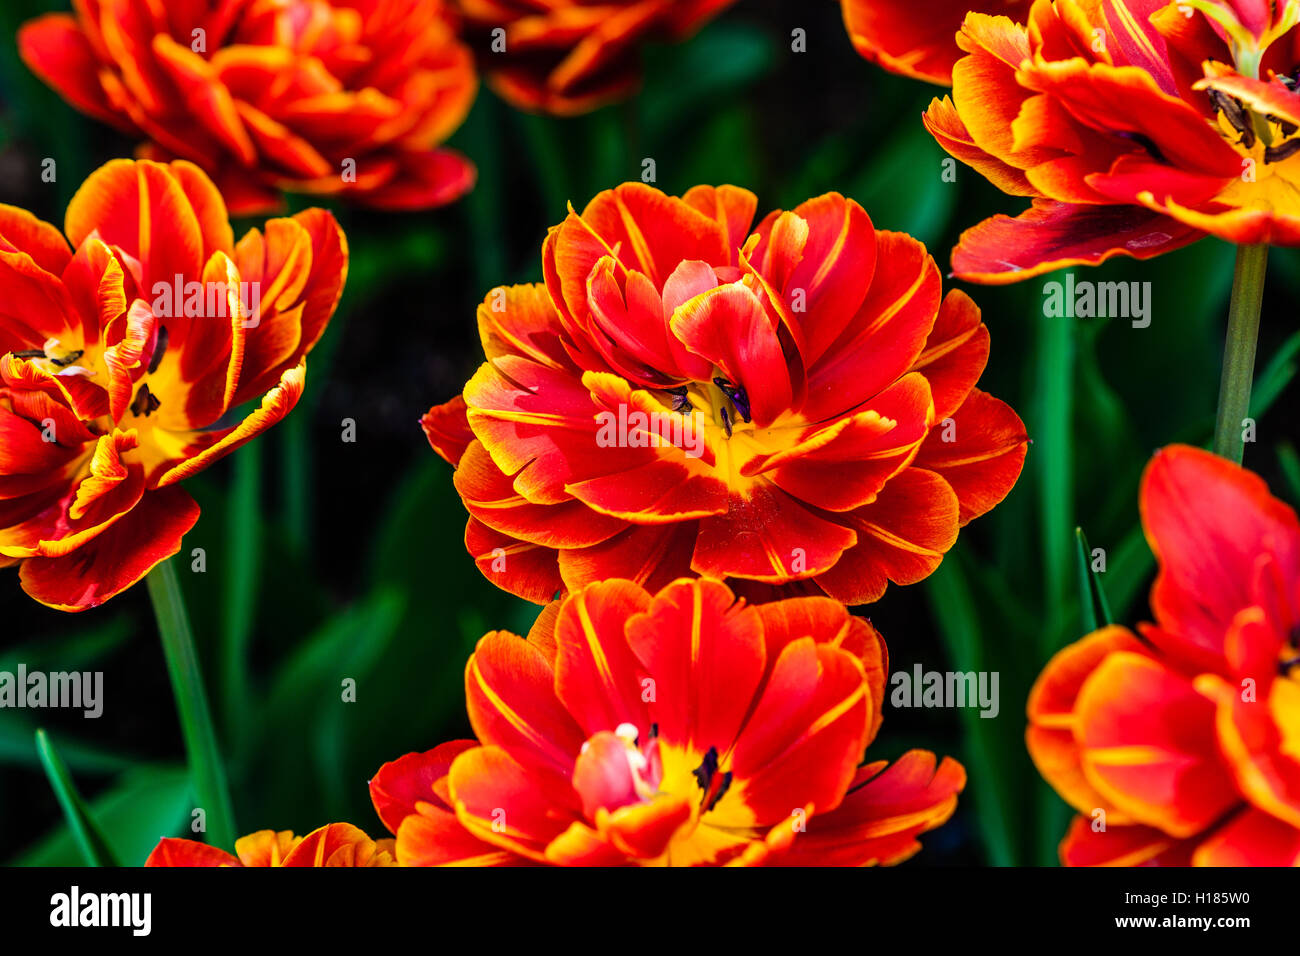 Doppelt-geblüht rote und gelbe Tulpen auf einem Blumenbeet unter grünen Blätter und Stängel. Schönheit der Frühjahrssaison Stockfoto